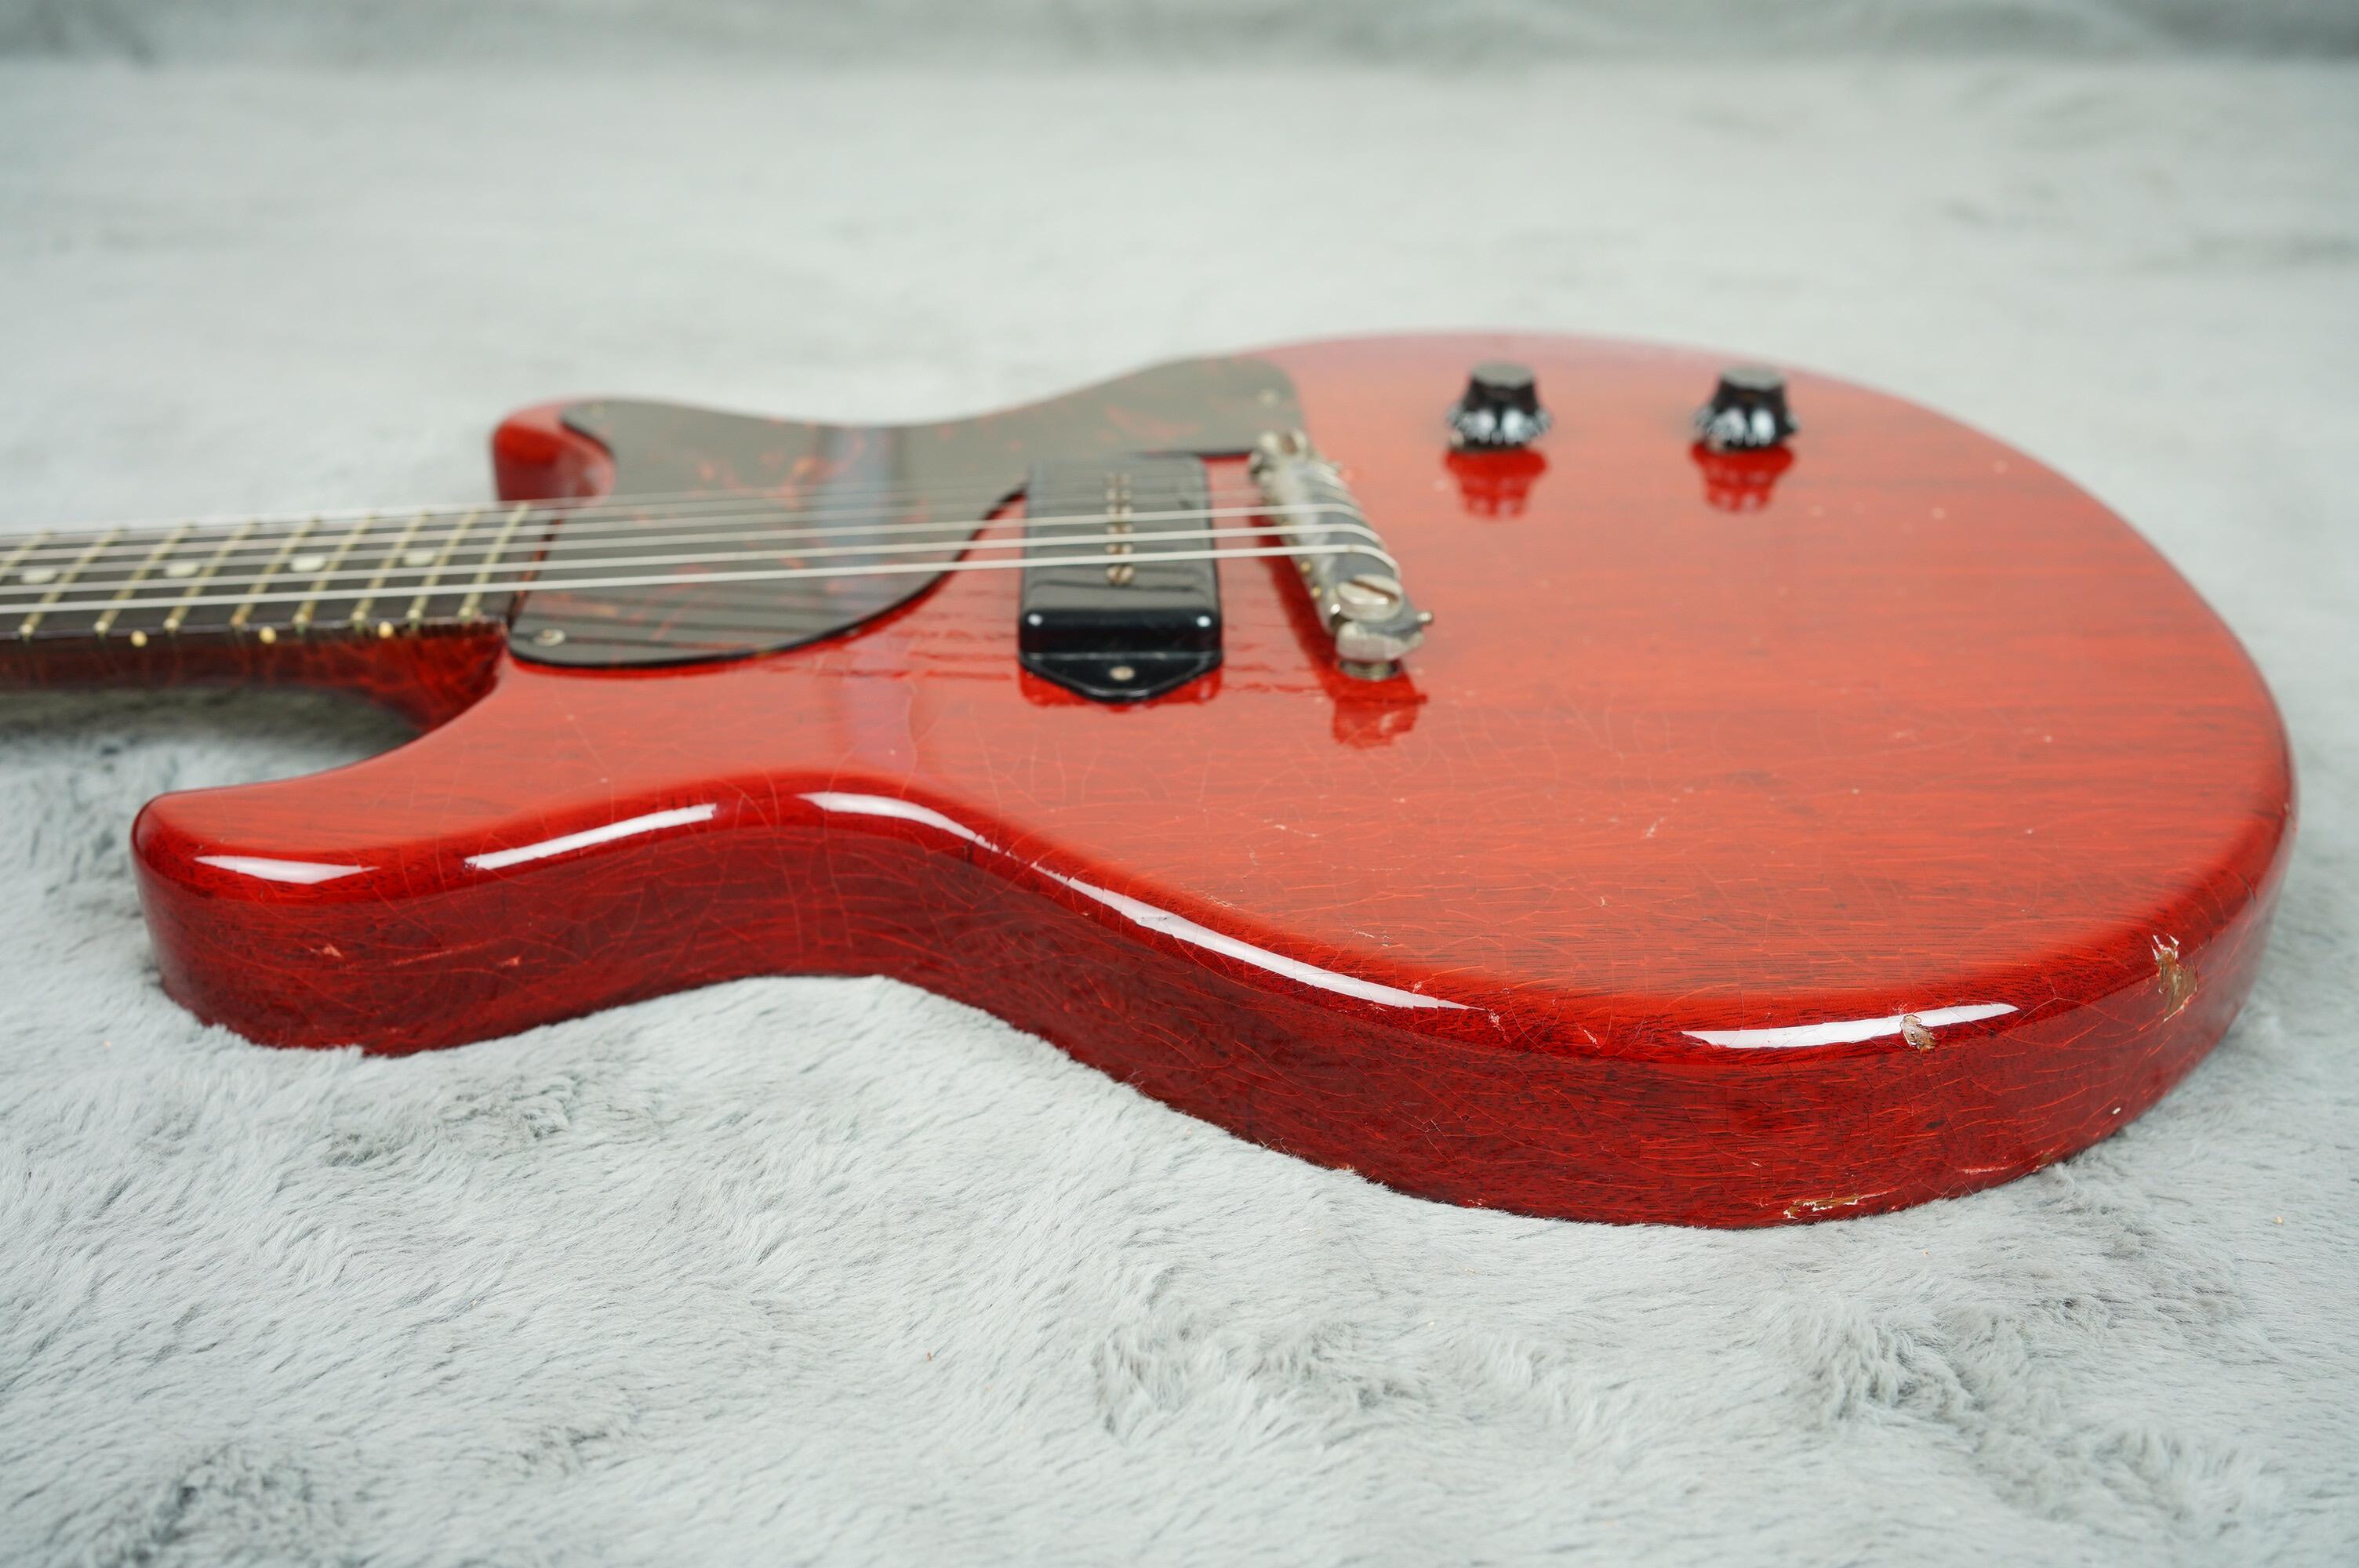 1959 Gibson Les Paul Junior refin